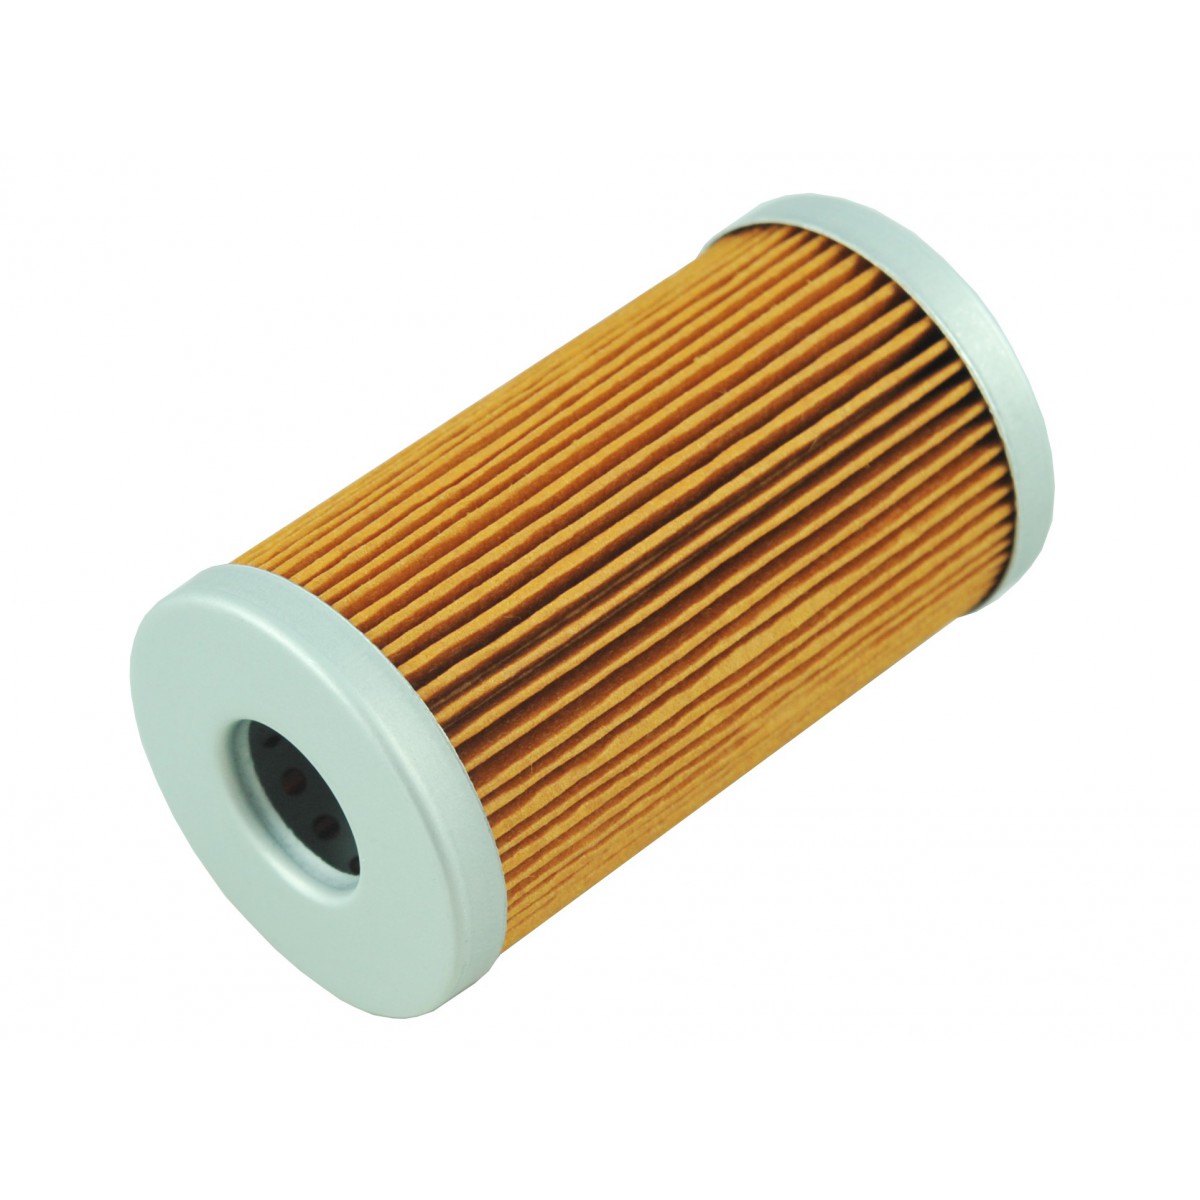 Palivový filter Iseki 50 x 90 mm Iseki TA / TK / TA247 / TA530 / TD4410 / TL4201 / TL4370 / Yanmar FX / Kubota L